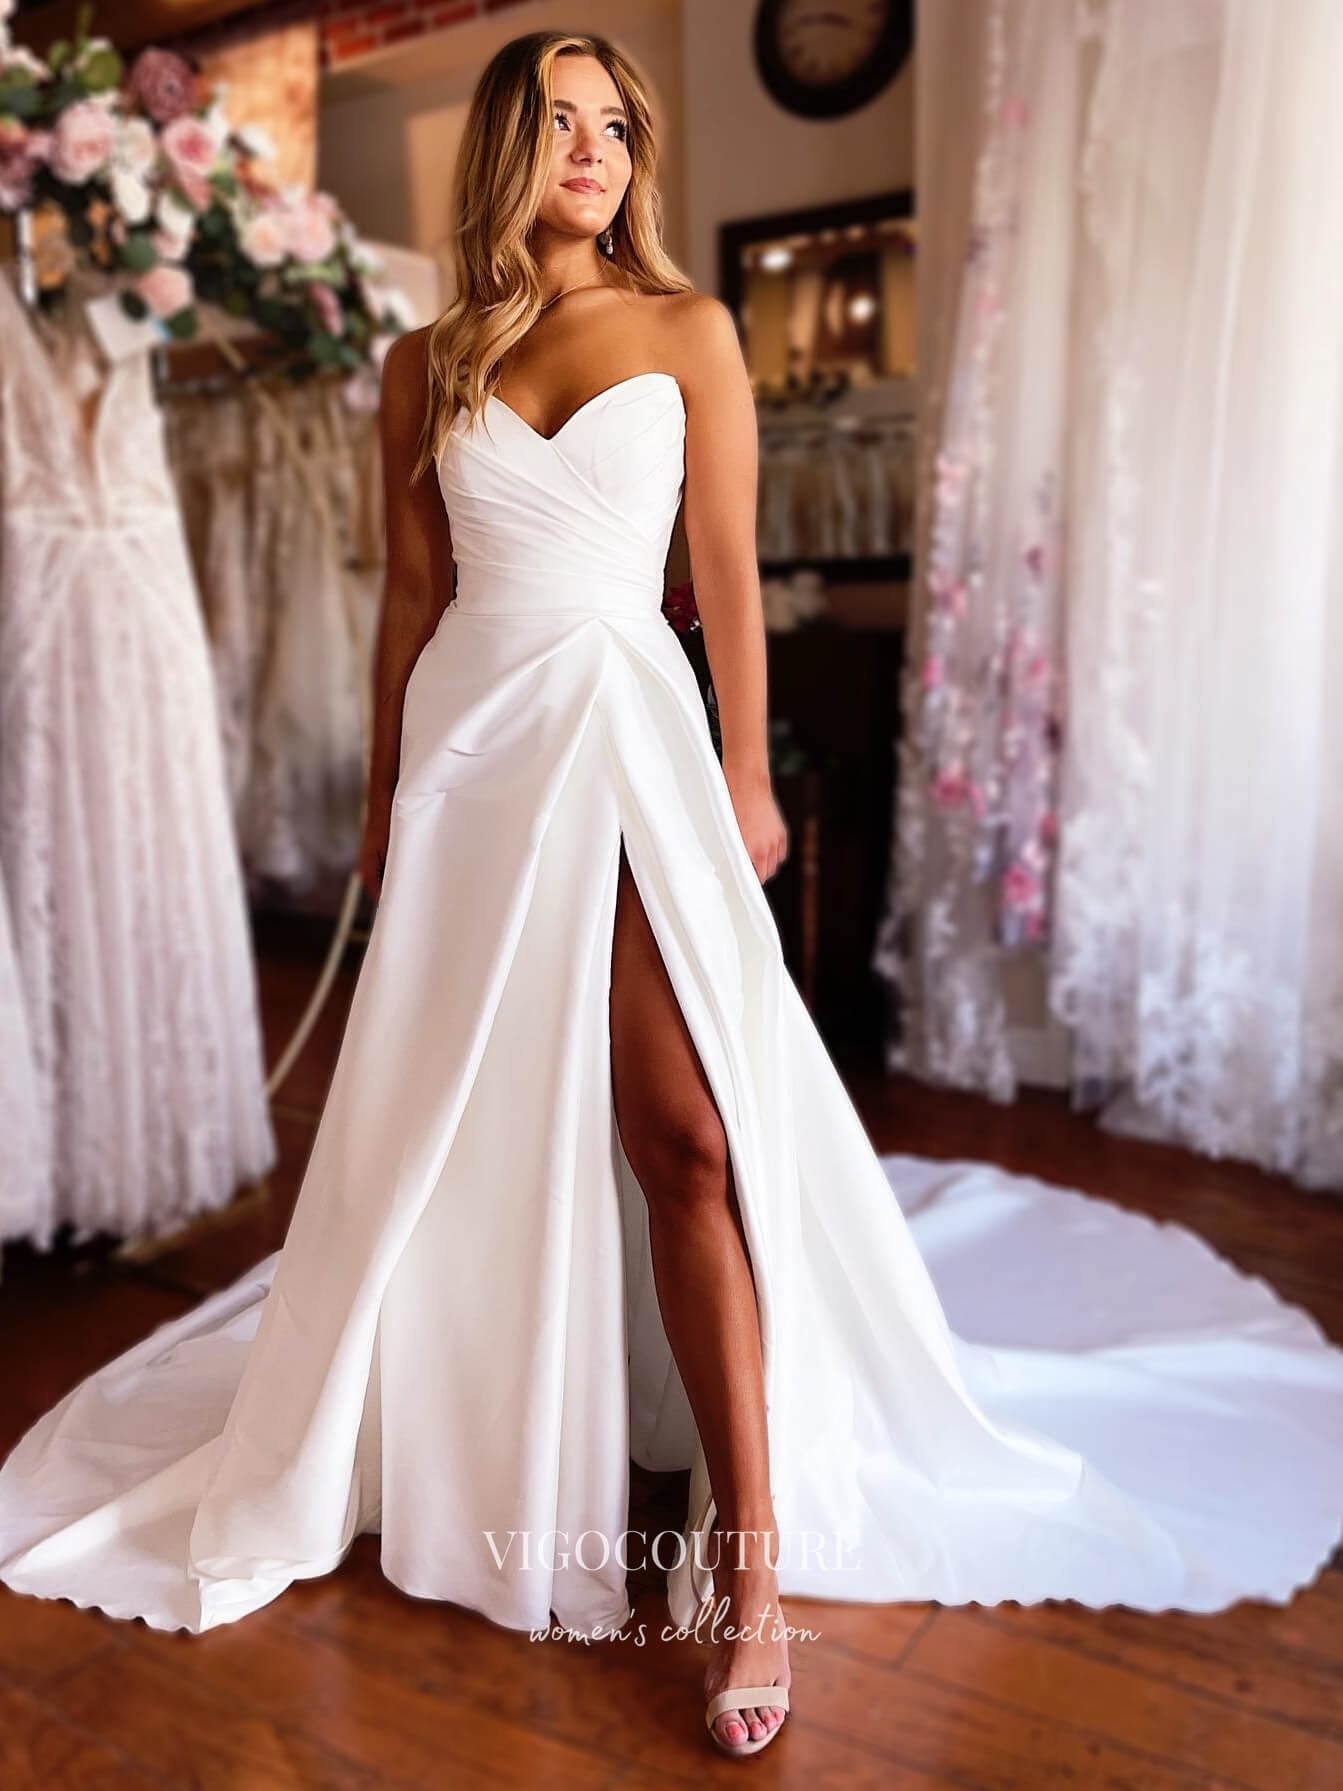 Elegant Long Satin Wedding Dresses With Pockets A-Line Side Slit Off  Shoulder Bridal Gowns With Slit for Women - AliExpress